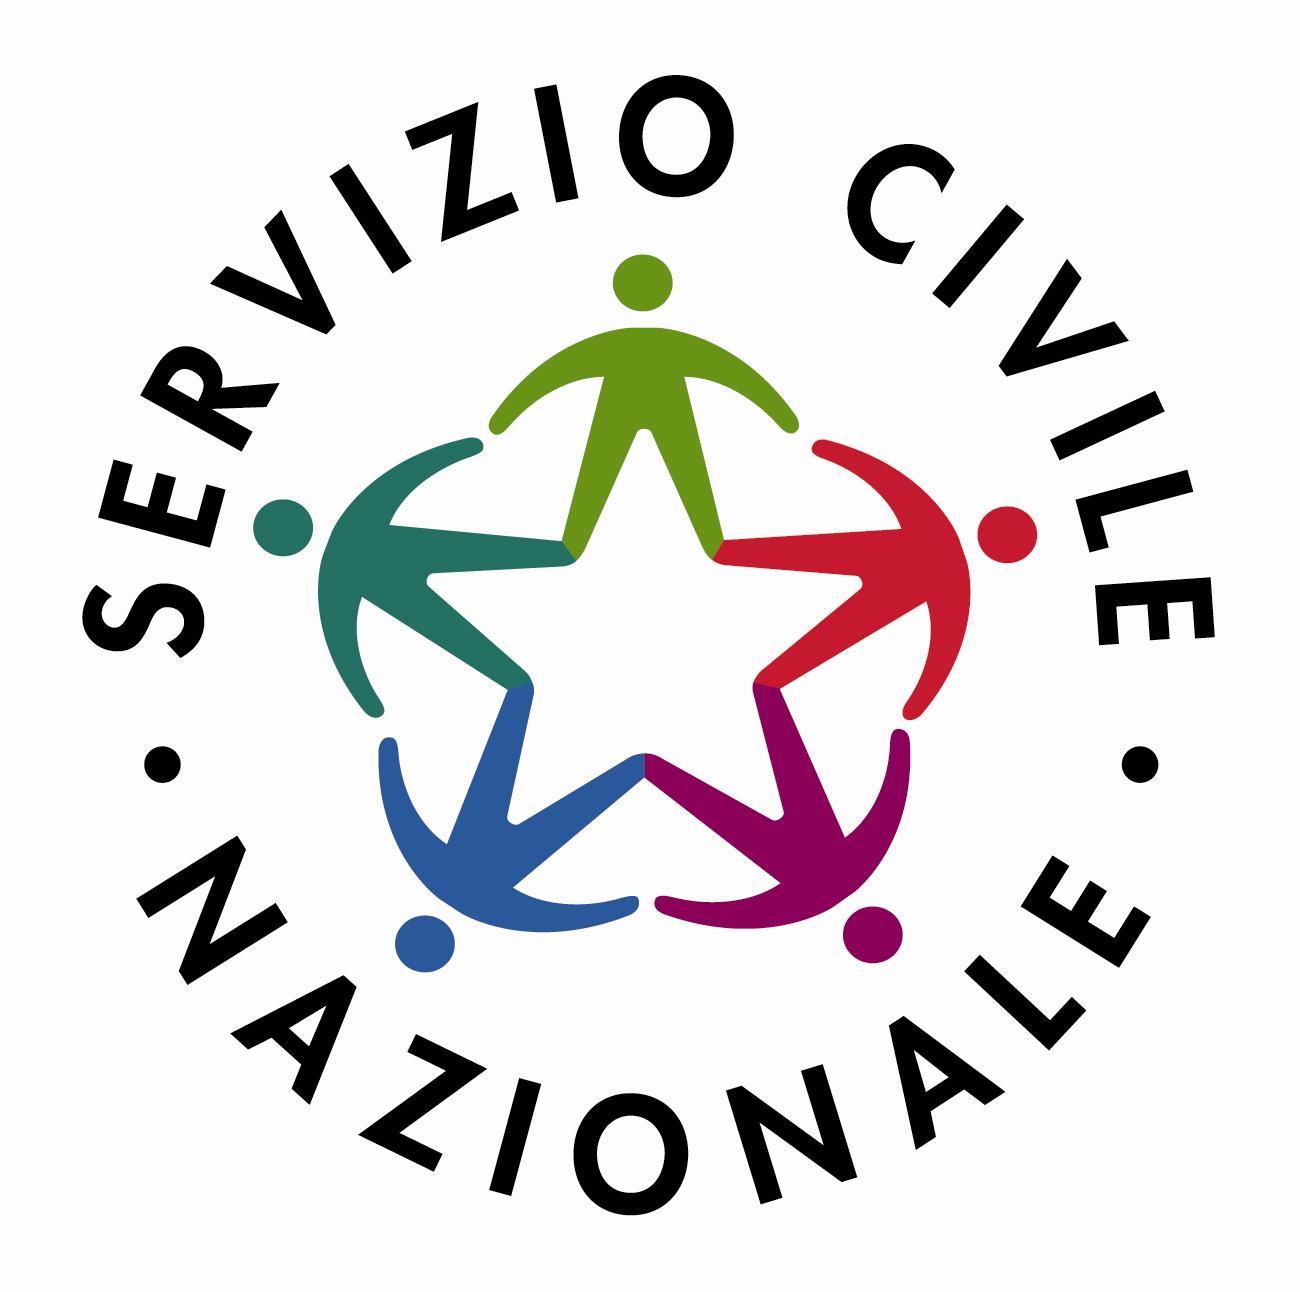 logo-servizio-civile